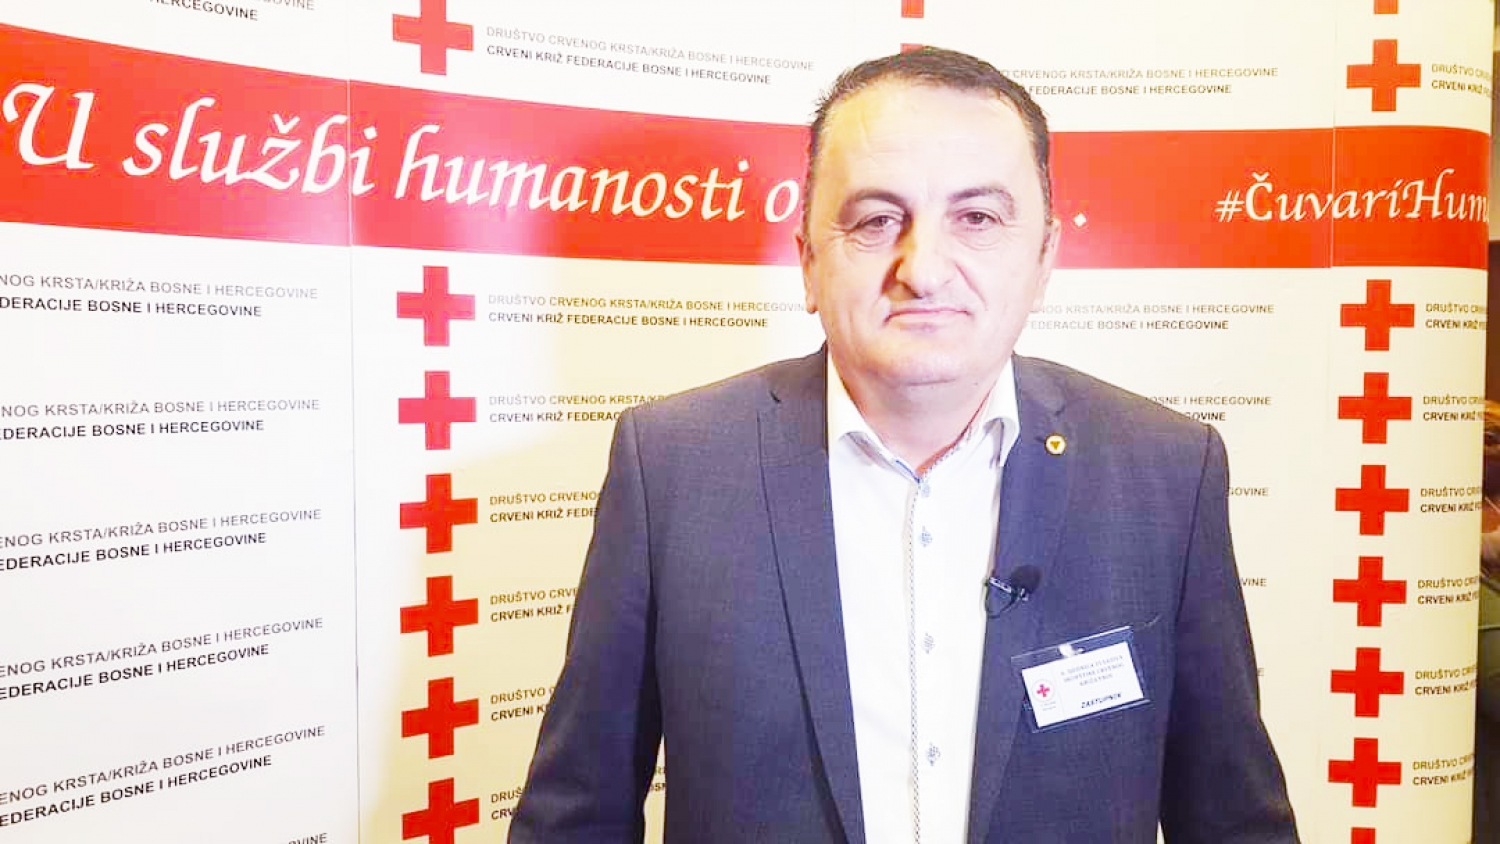 Važna uloga Crvenog križa Bosne i Hercegovine u vremenu korona krize